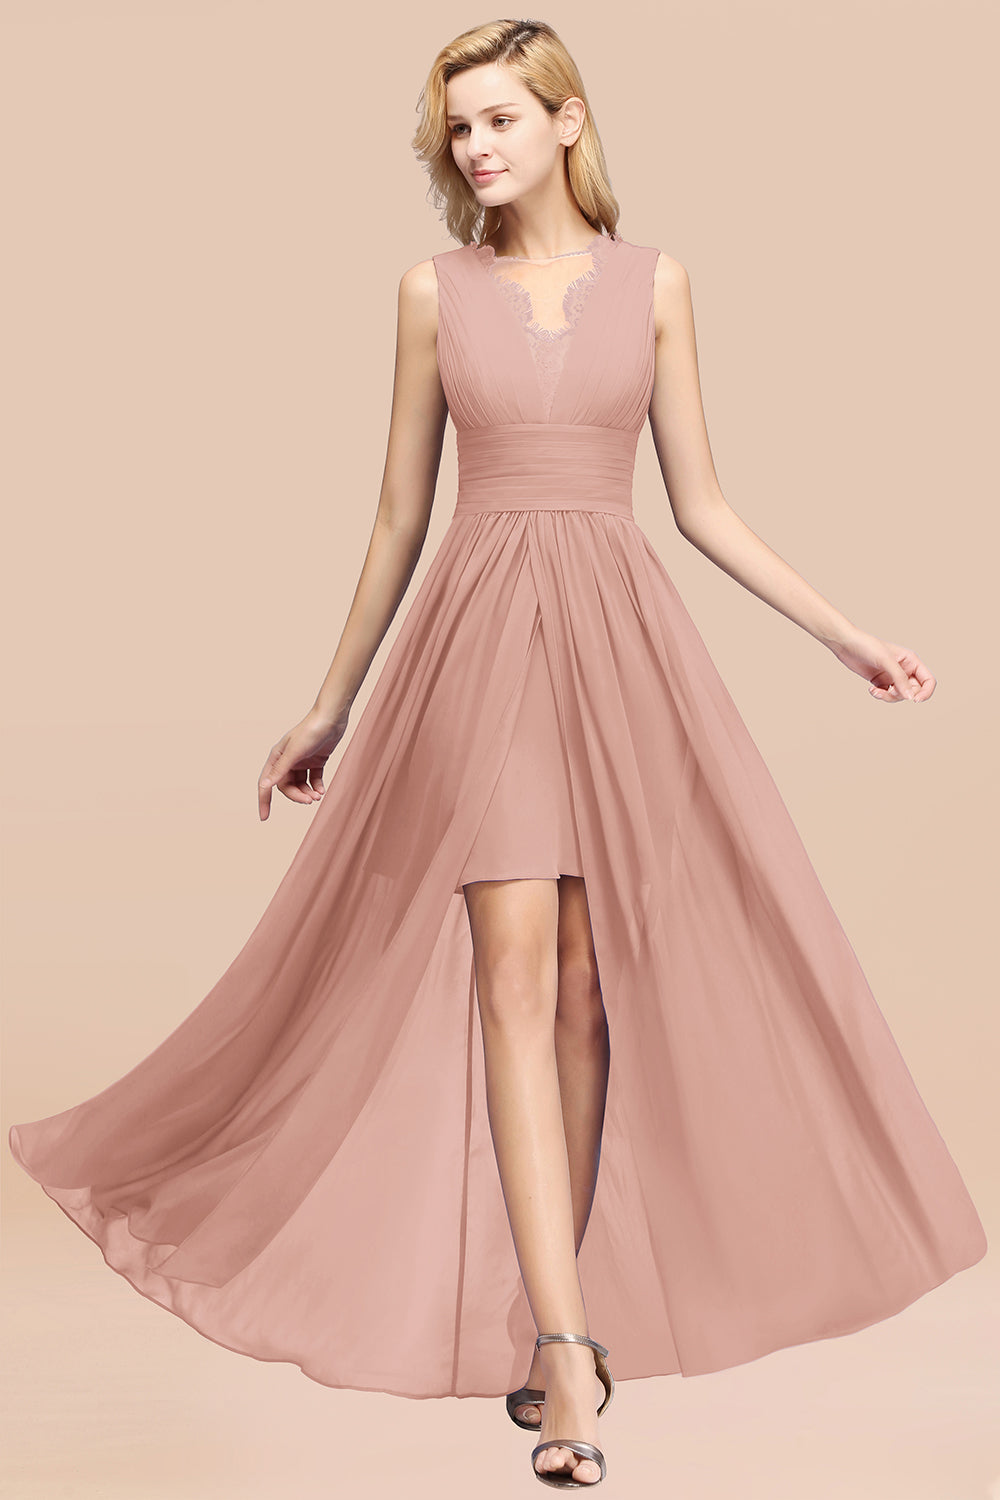 Elegant Chiffon Lace Jewel Sleeveless Bridesmaid Dress with Ruffle-27dress